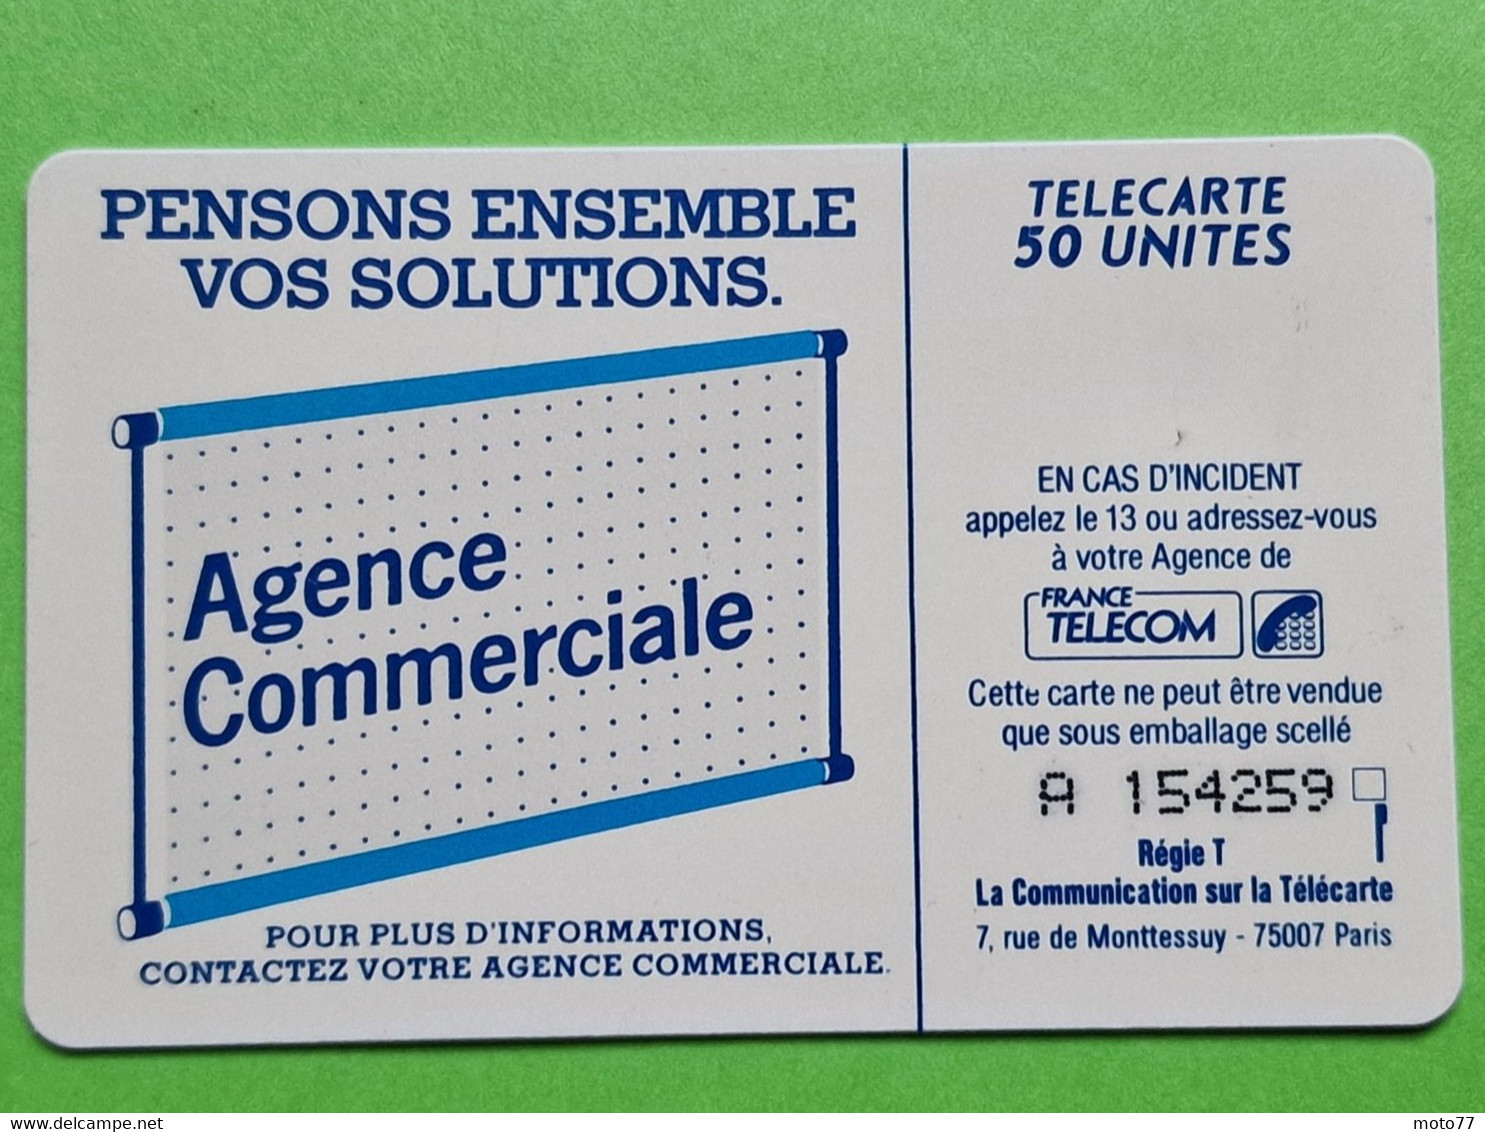 Deuxième Période De Carte Téléphonique De France - VIDE - Télécarte Cabine Téléphone France Télécom - Telecom